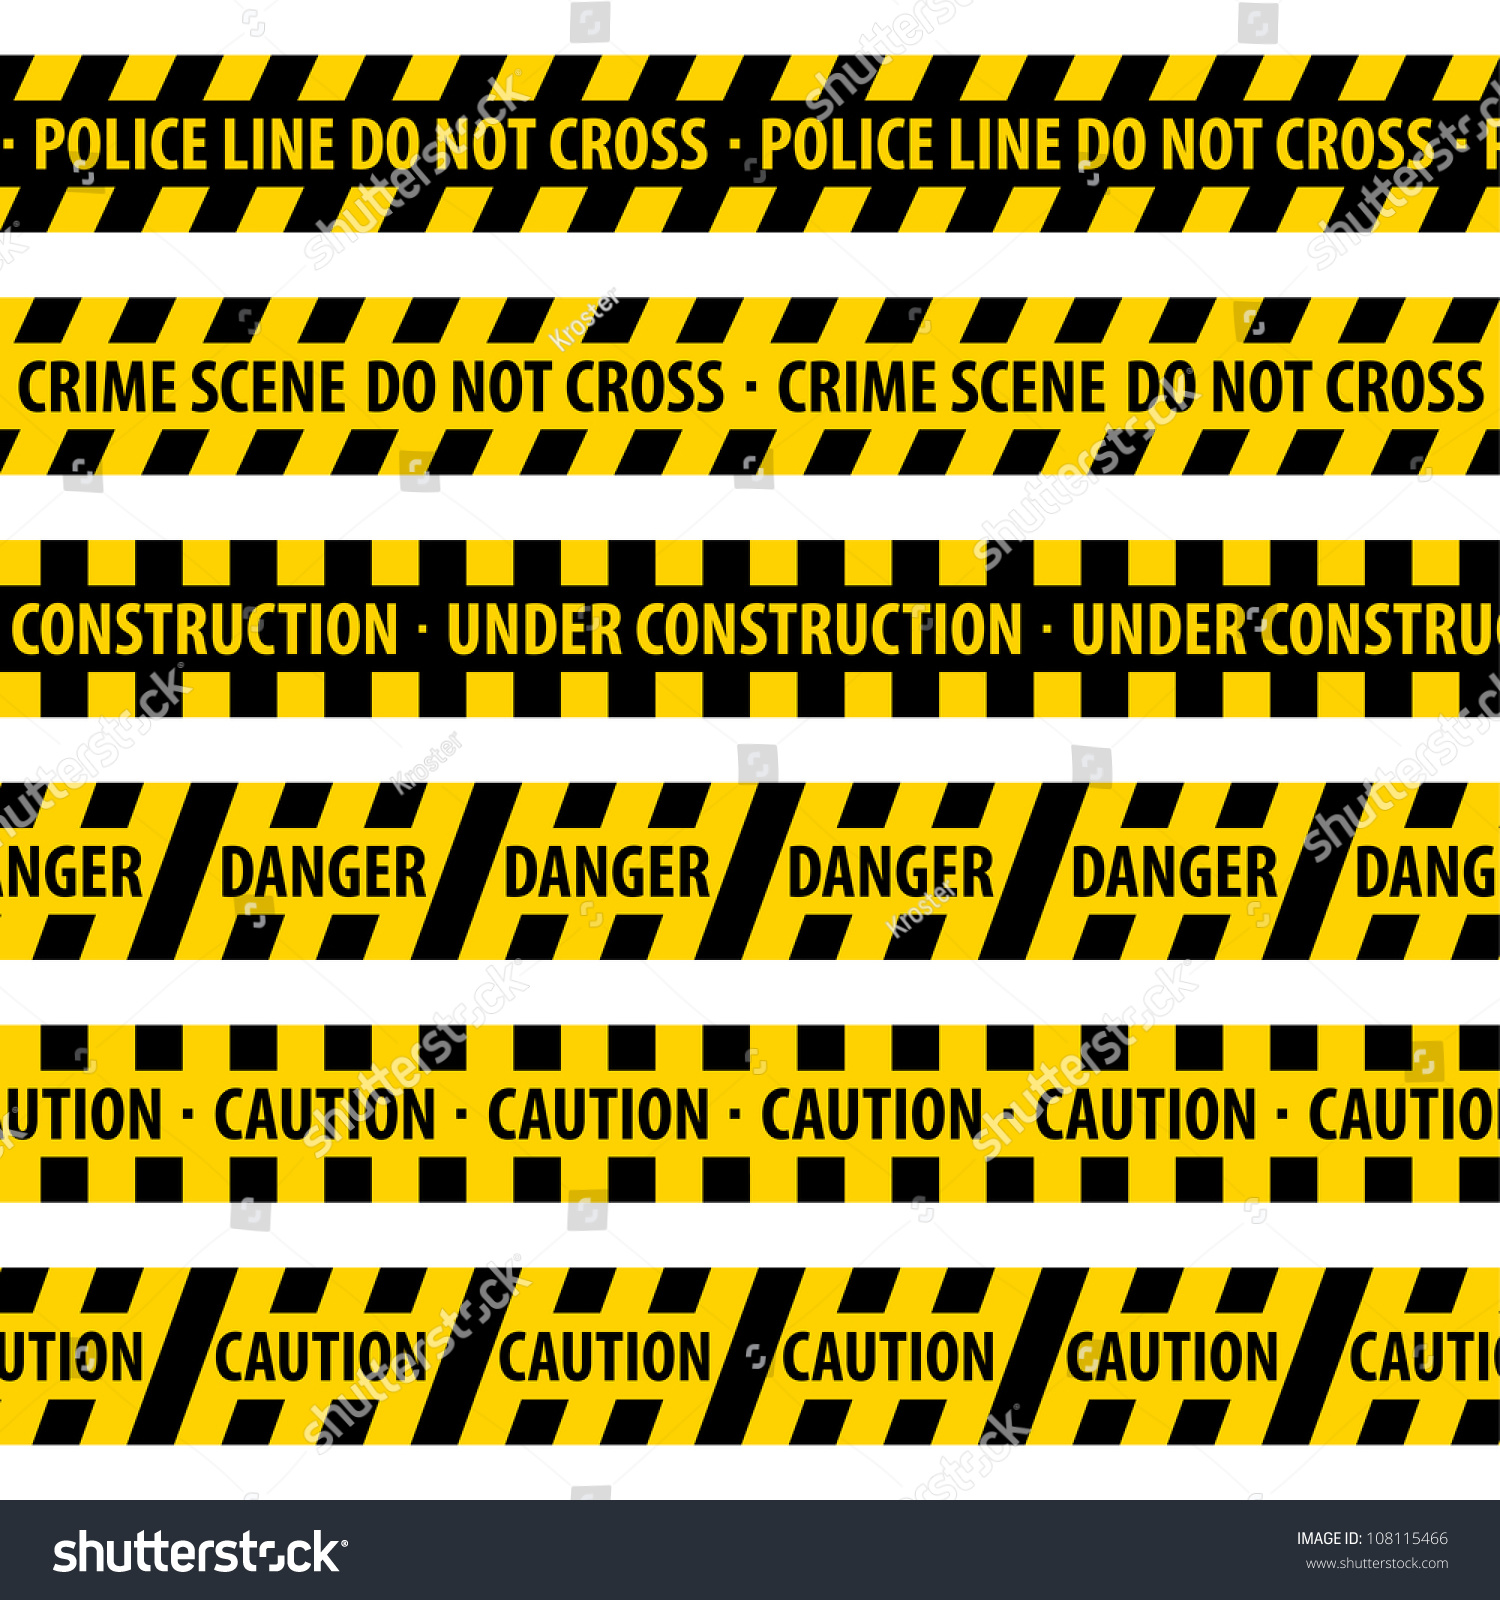 SVG of Police Line. vector illustration. svg